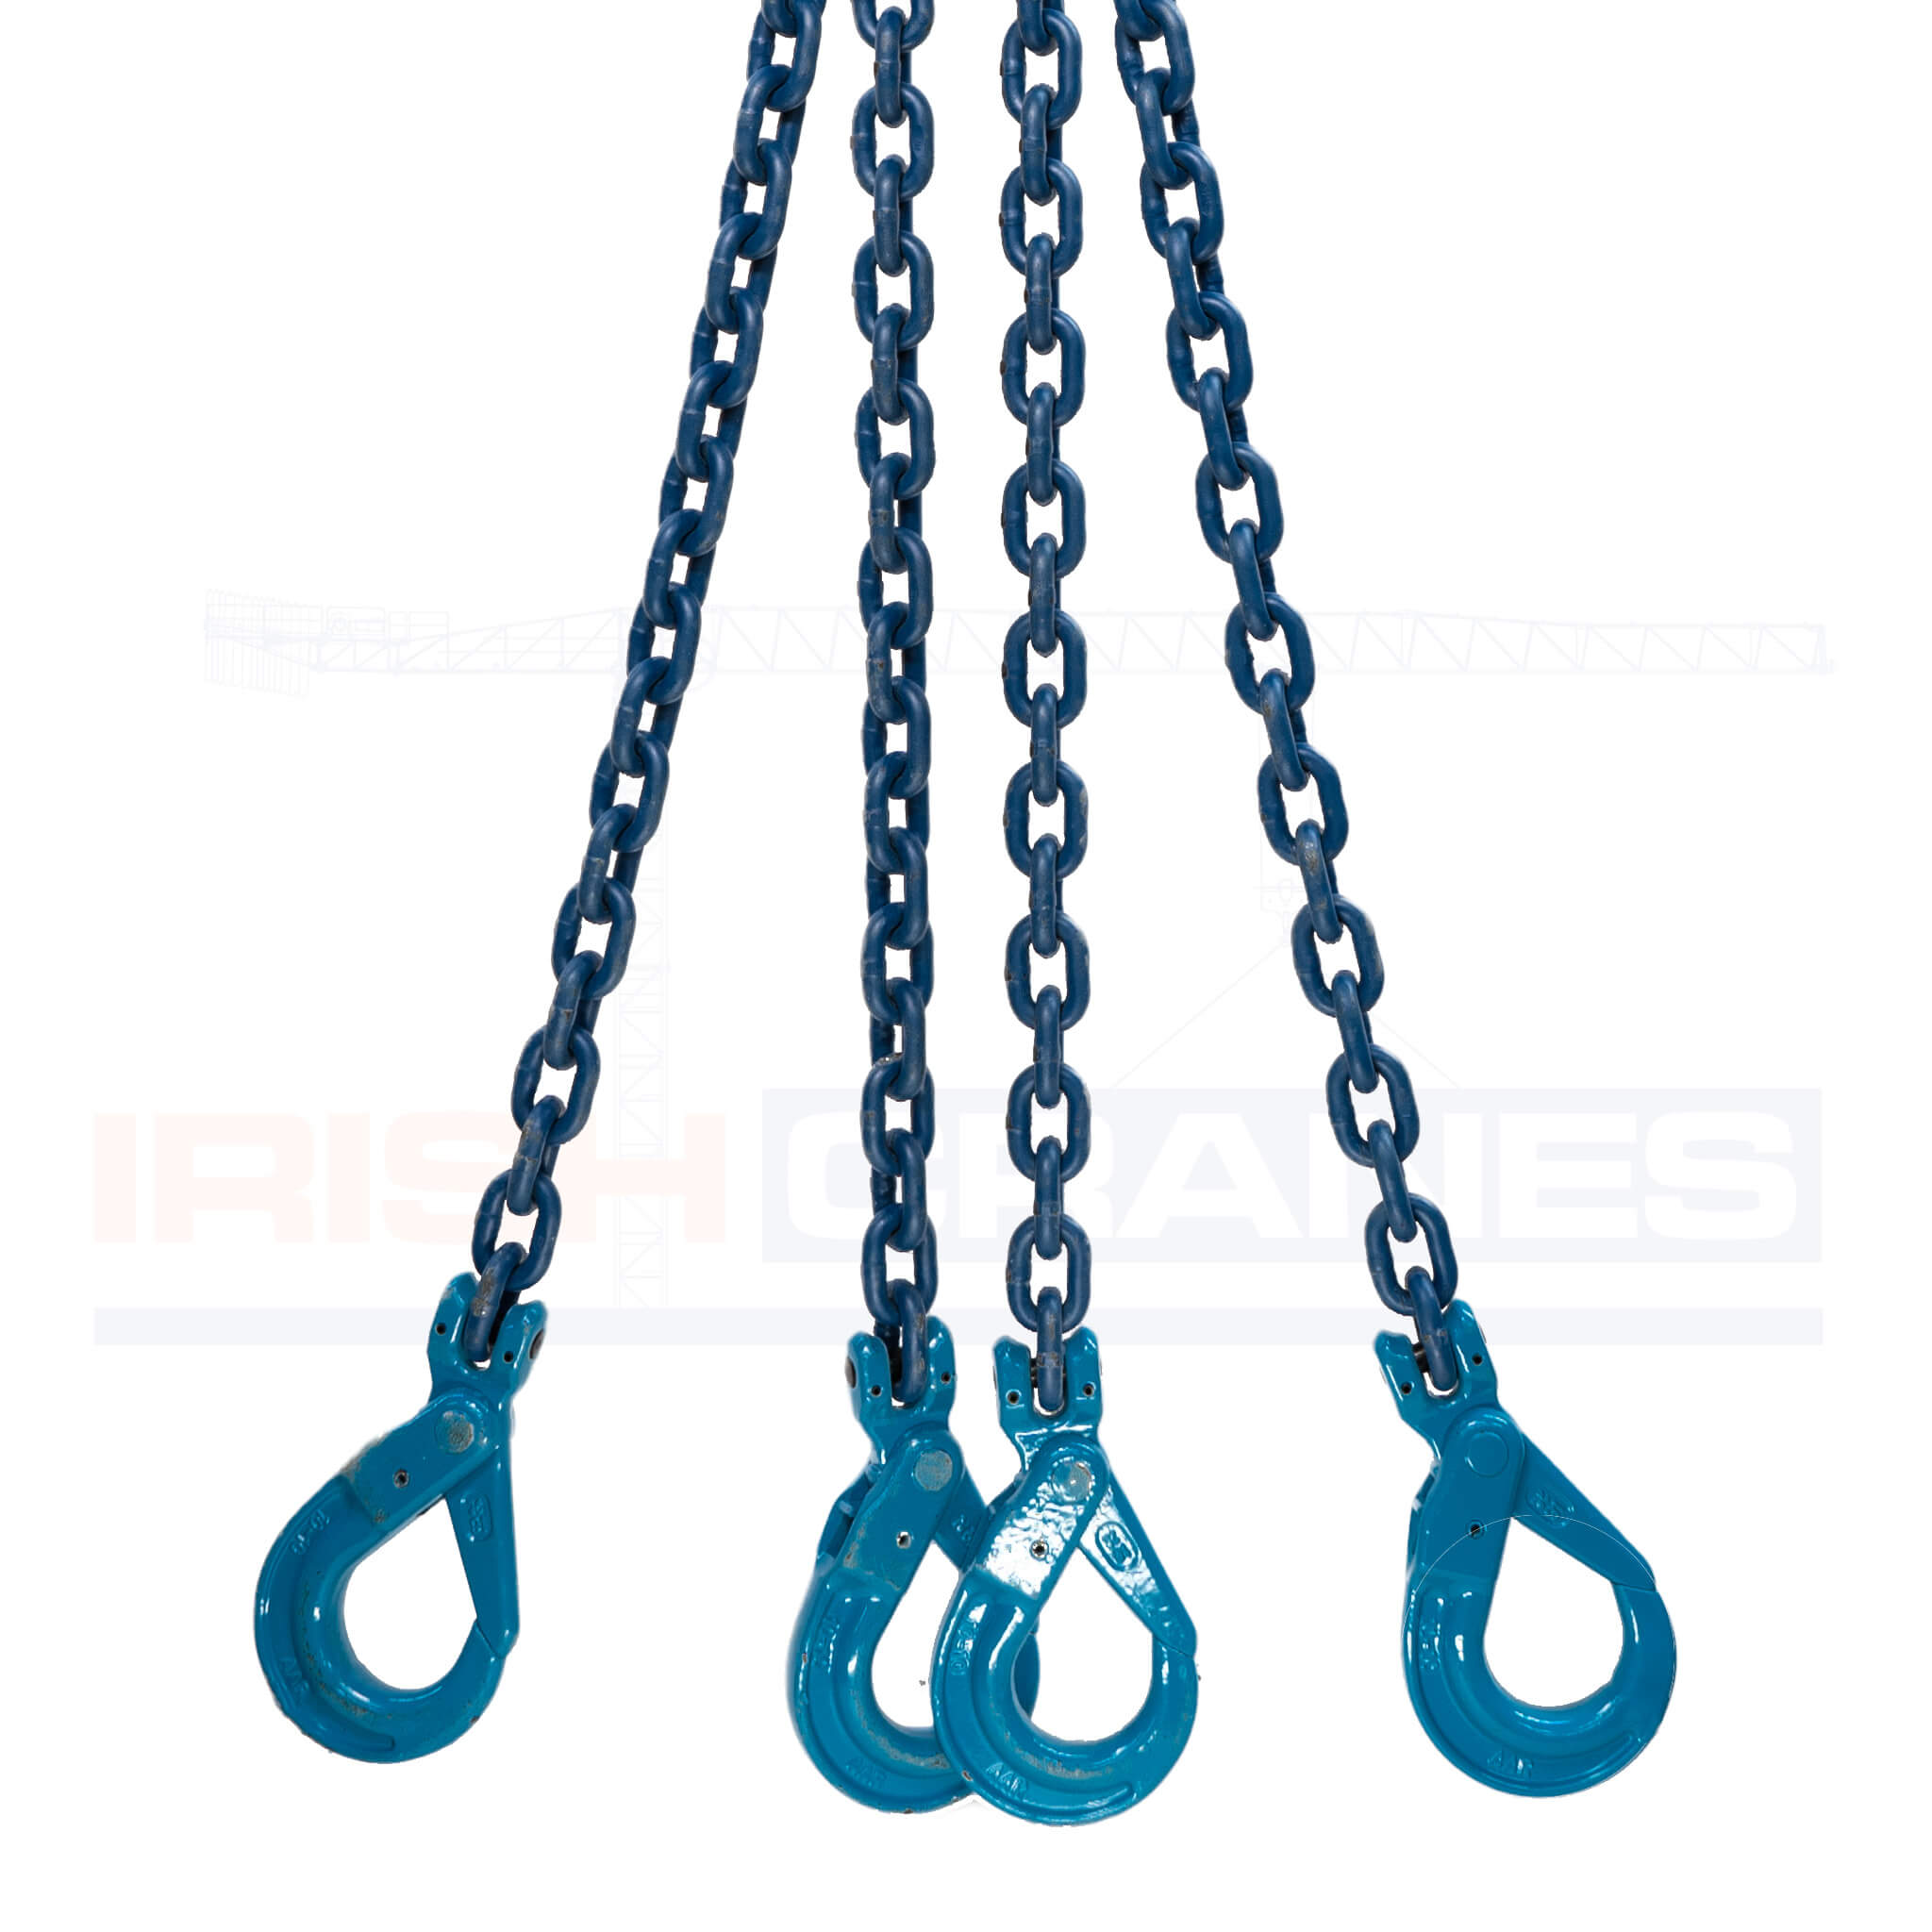 4 Leg Chain – Lifting Chain Sling hook